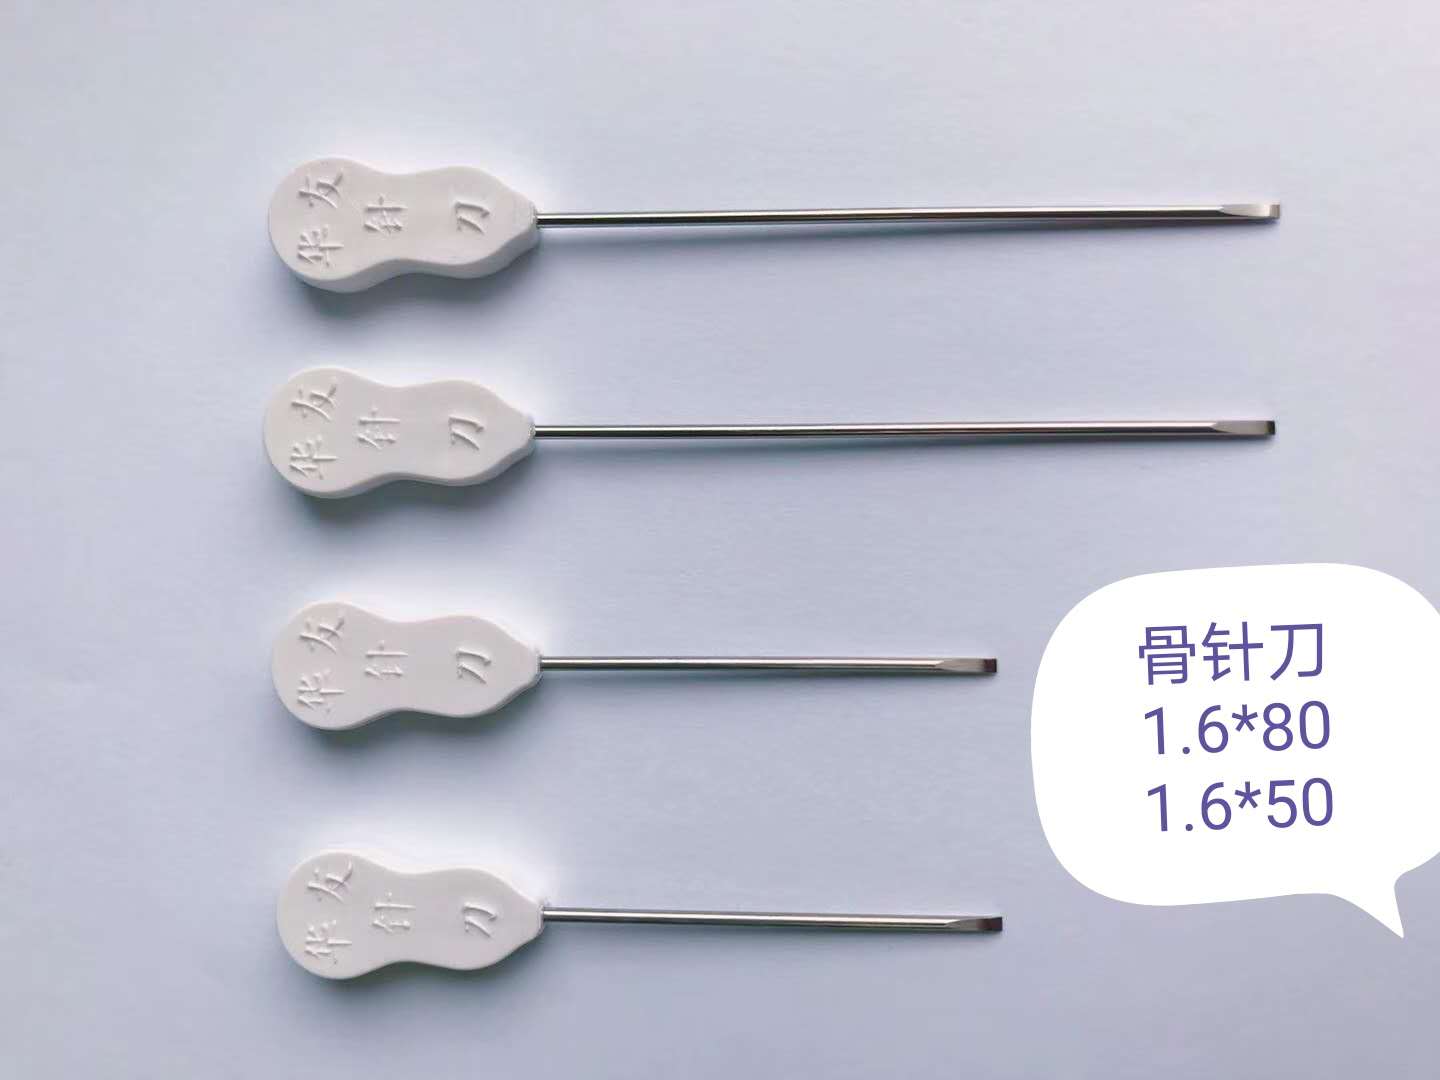 【QH公益直播】崔秀芳教授：针刀疗法在慢性病中的应用